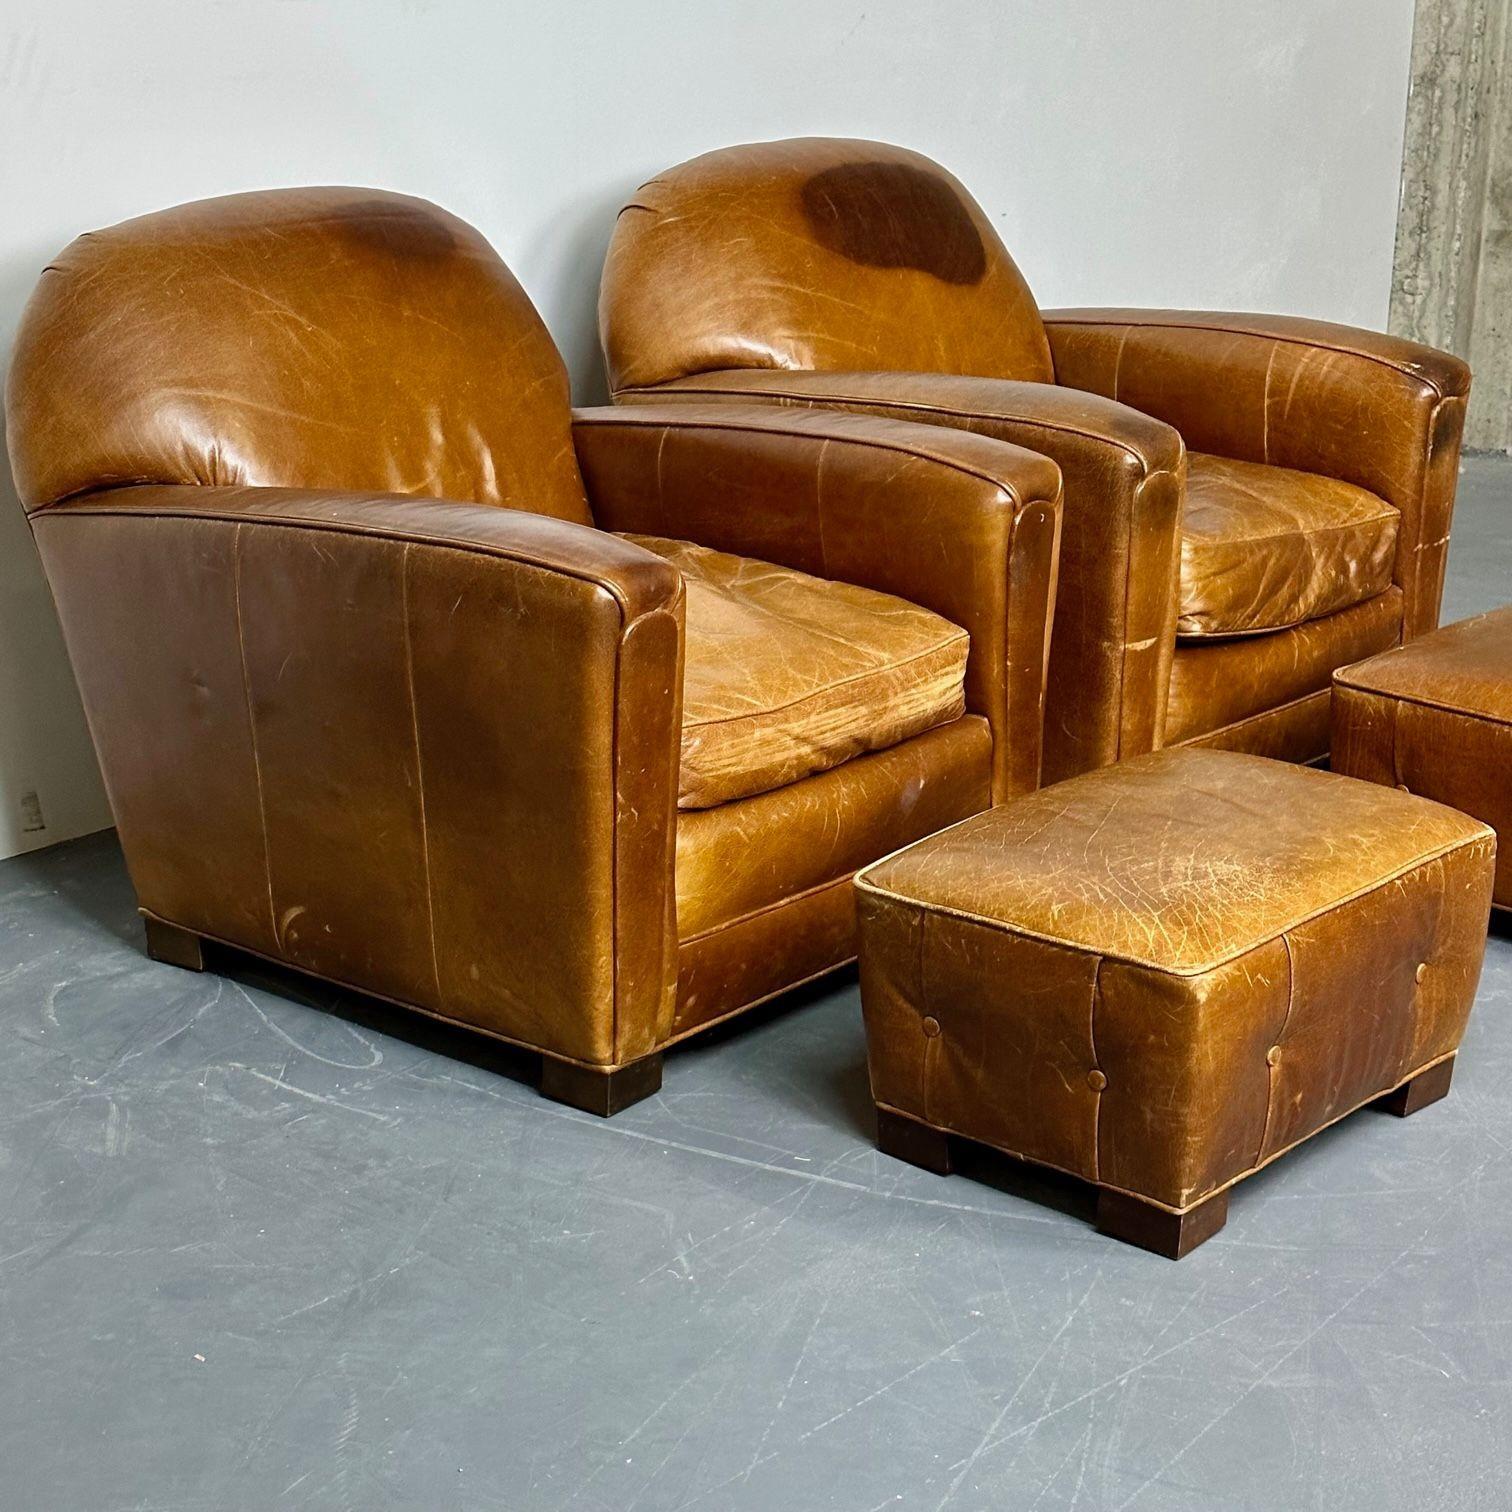 Paire de grands fauteuils club / lounge Art Déco français en cuir vieilli.
 
Un bel exemple de design de fauteuil de salon / club art déco accompagné d'une paire rare de poufs, vendus séparément. Grandes et impressionnantes, ces pièces